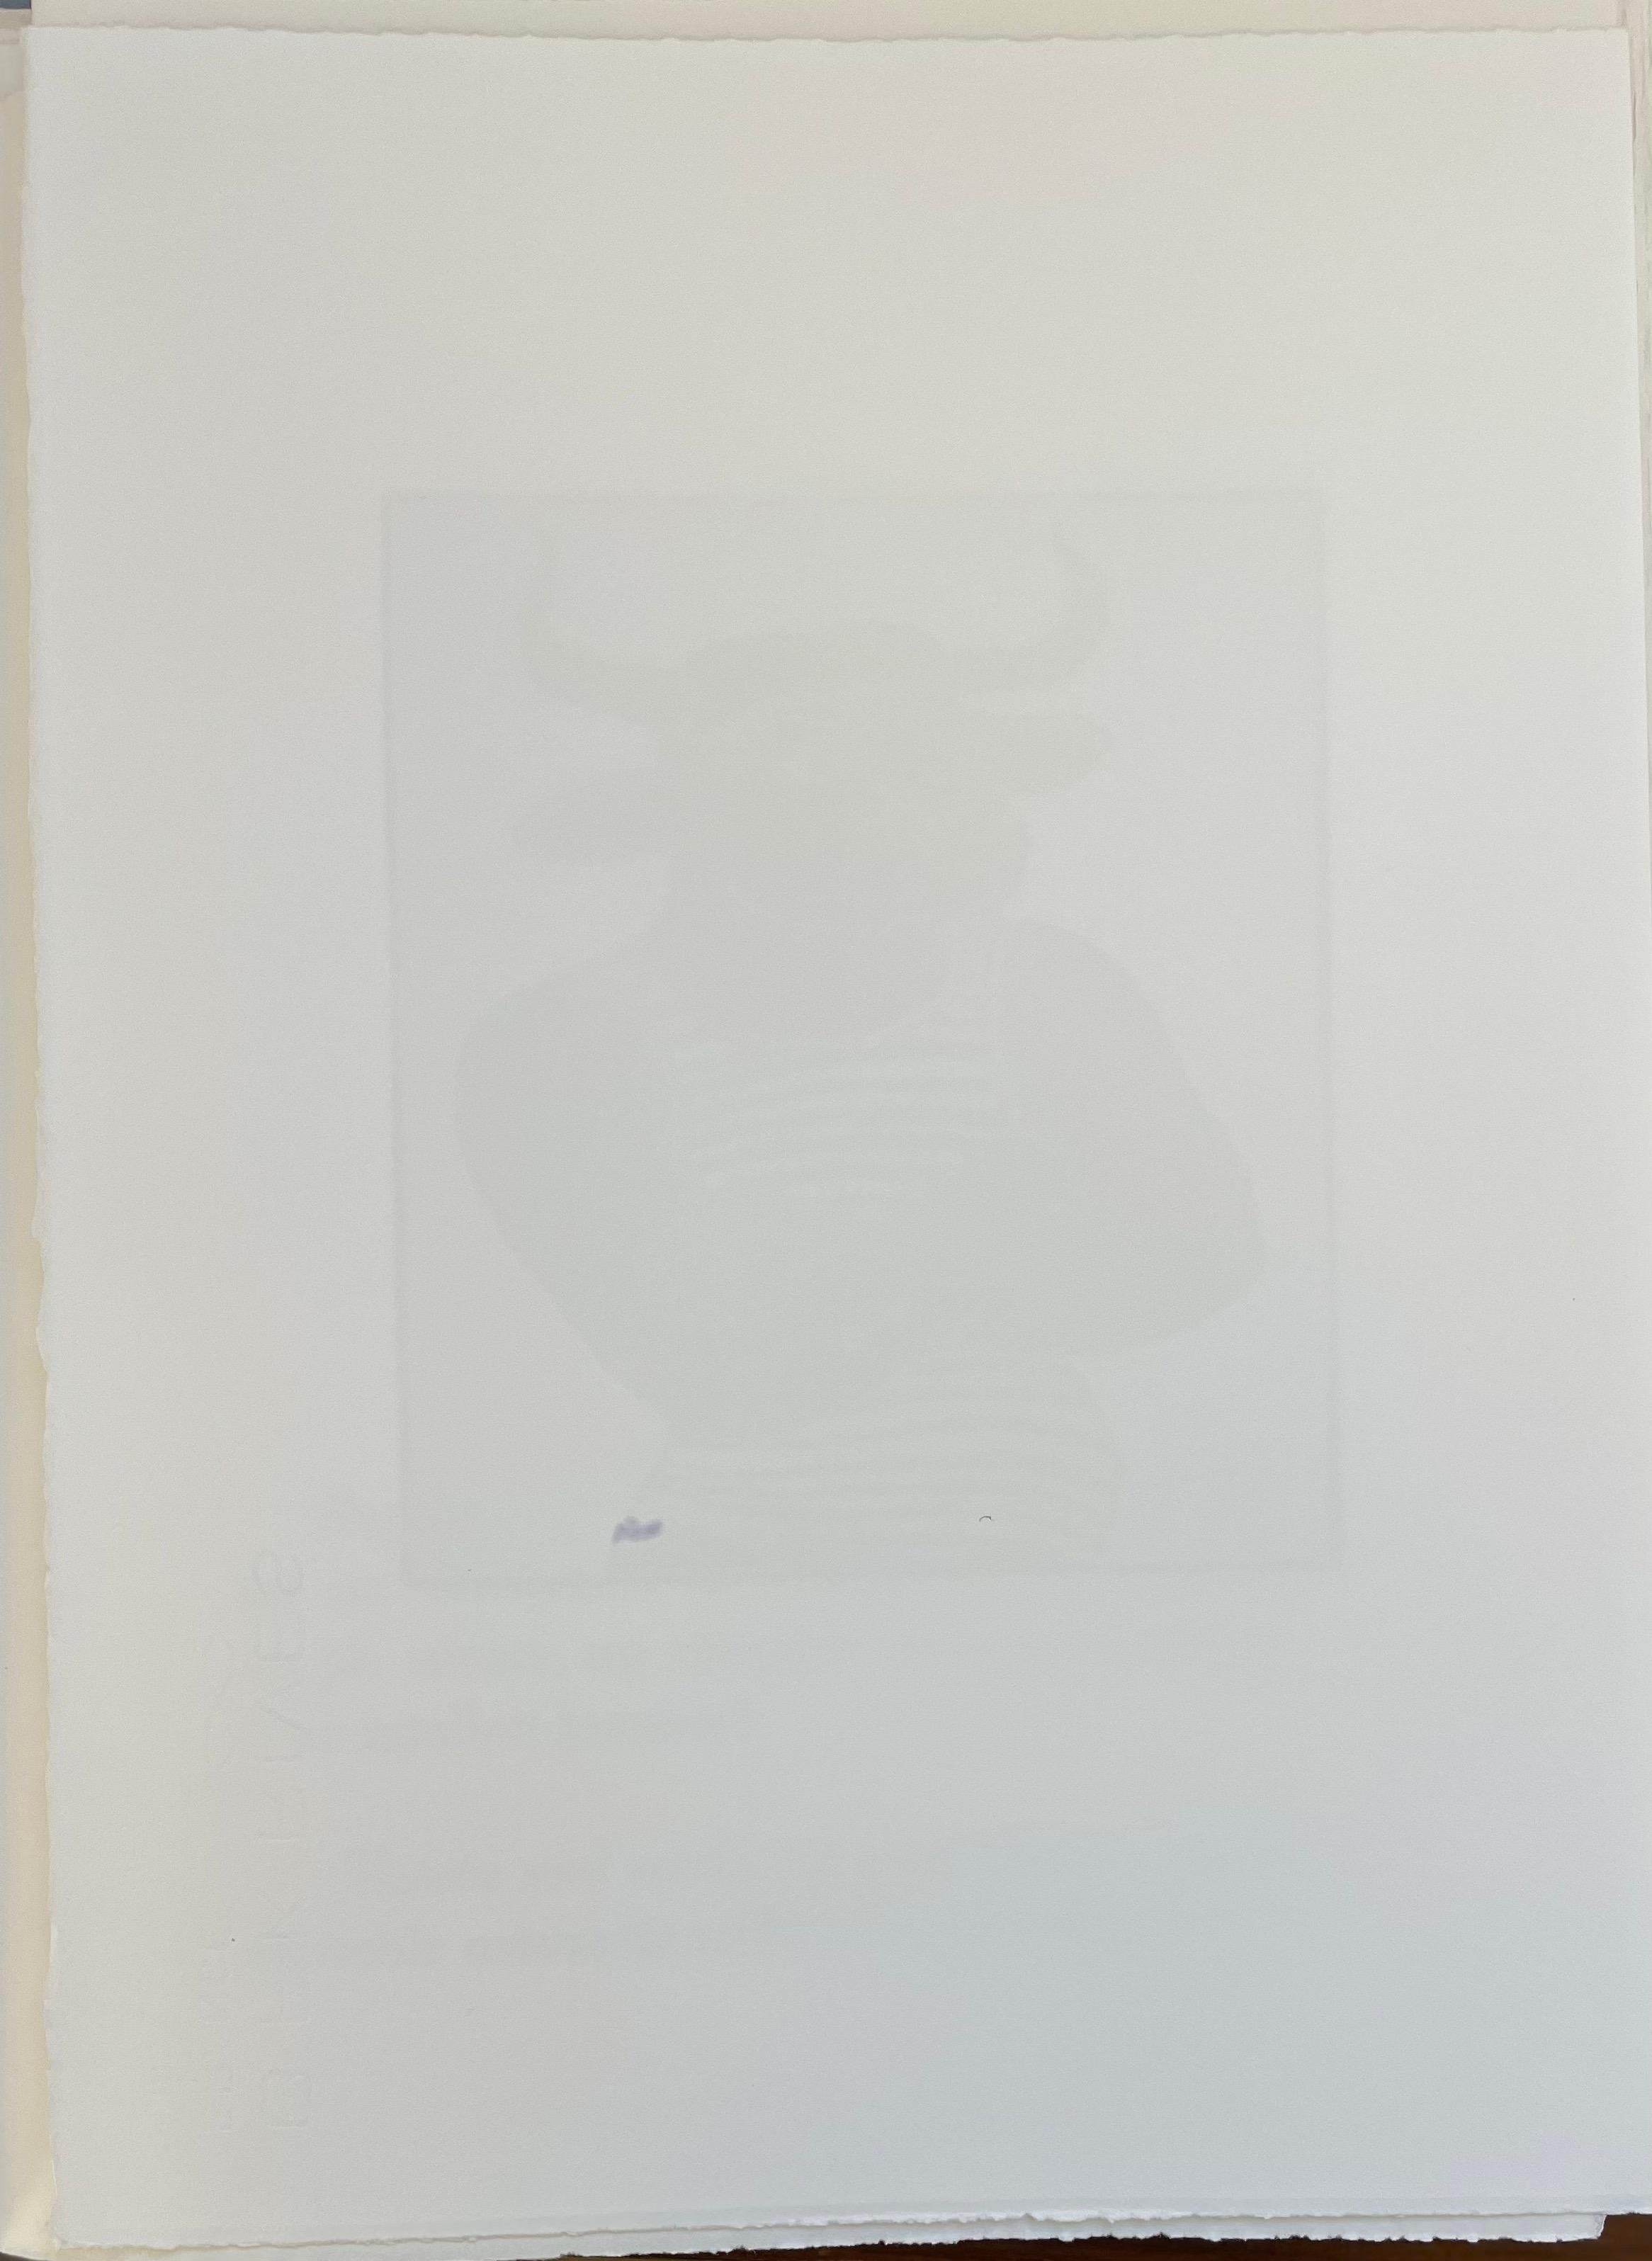  François-Xavier Lalanne (1927-2008) Ibis, 2005 
Techniques : aquatinte et vernis mou sur papier, signé au crayon par François Xavier Lalanne, en parfait état. 
Dimensions du papier : 38 x 28 cm (14,96 x 11 inches) 
Dimensions du tirage lui-même :